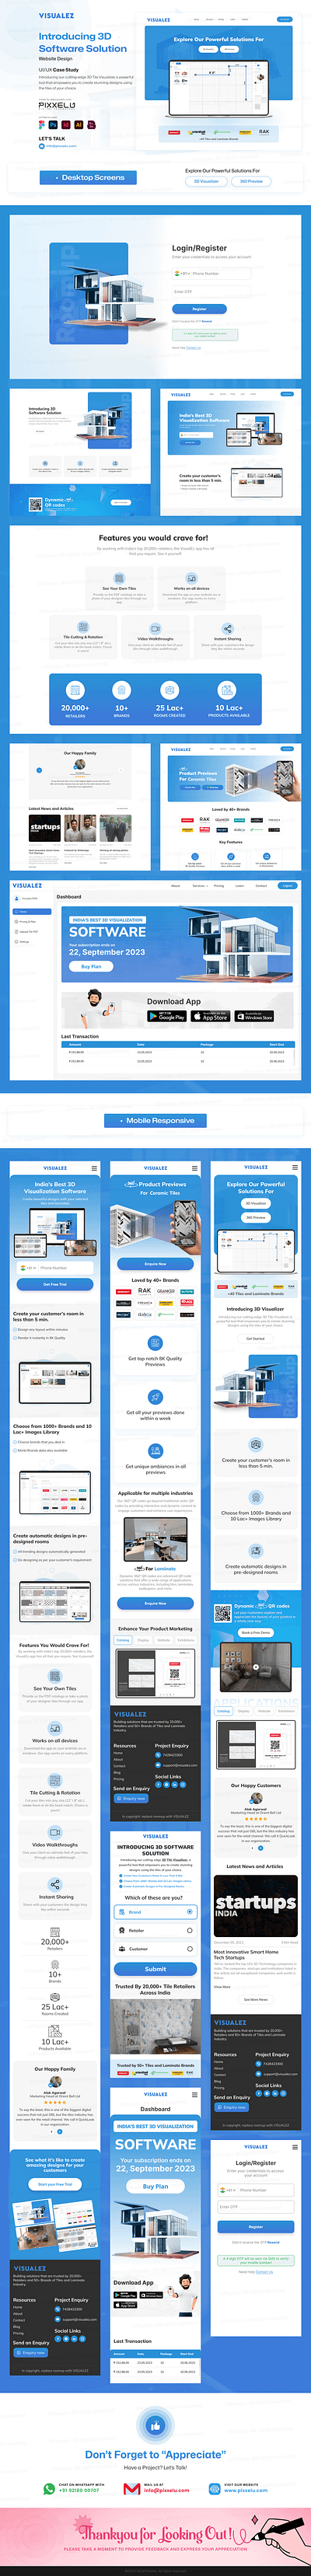 Visualez app showcase app ui creative home decor interior design online tiling software ui case study uiux case study uiux kit uiux web design vi visual design